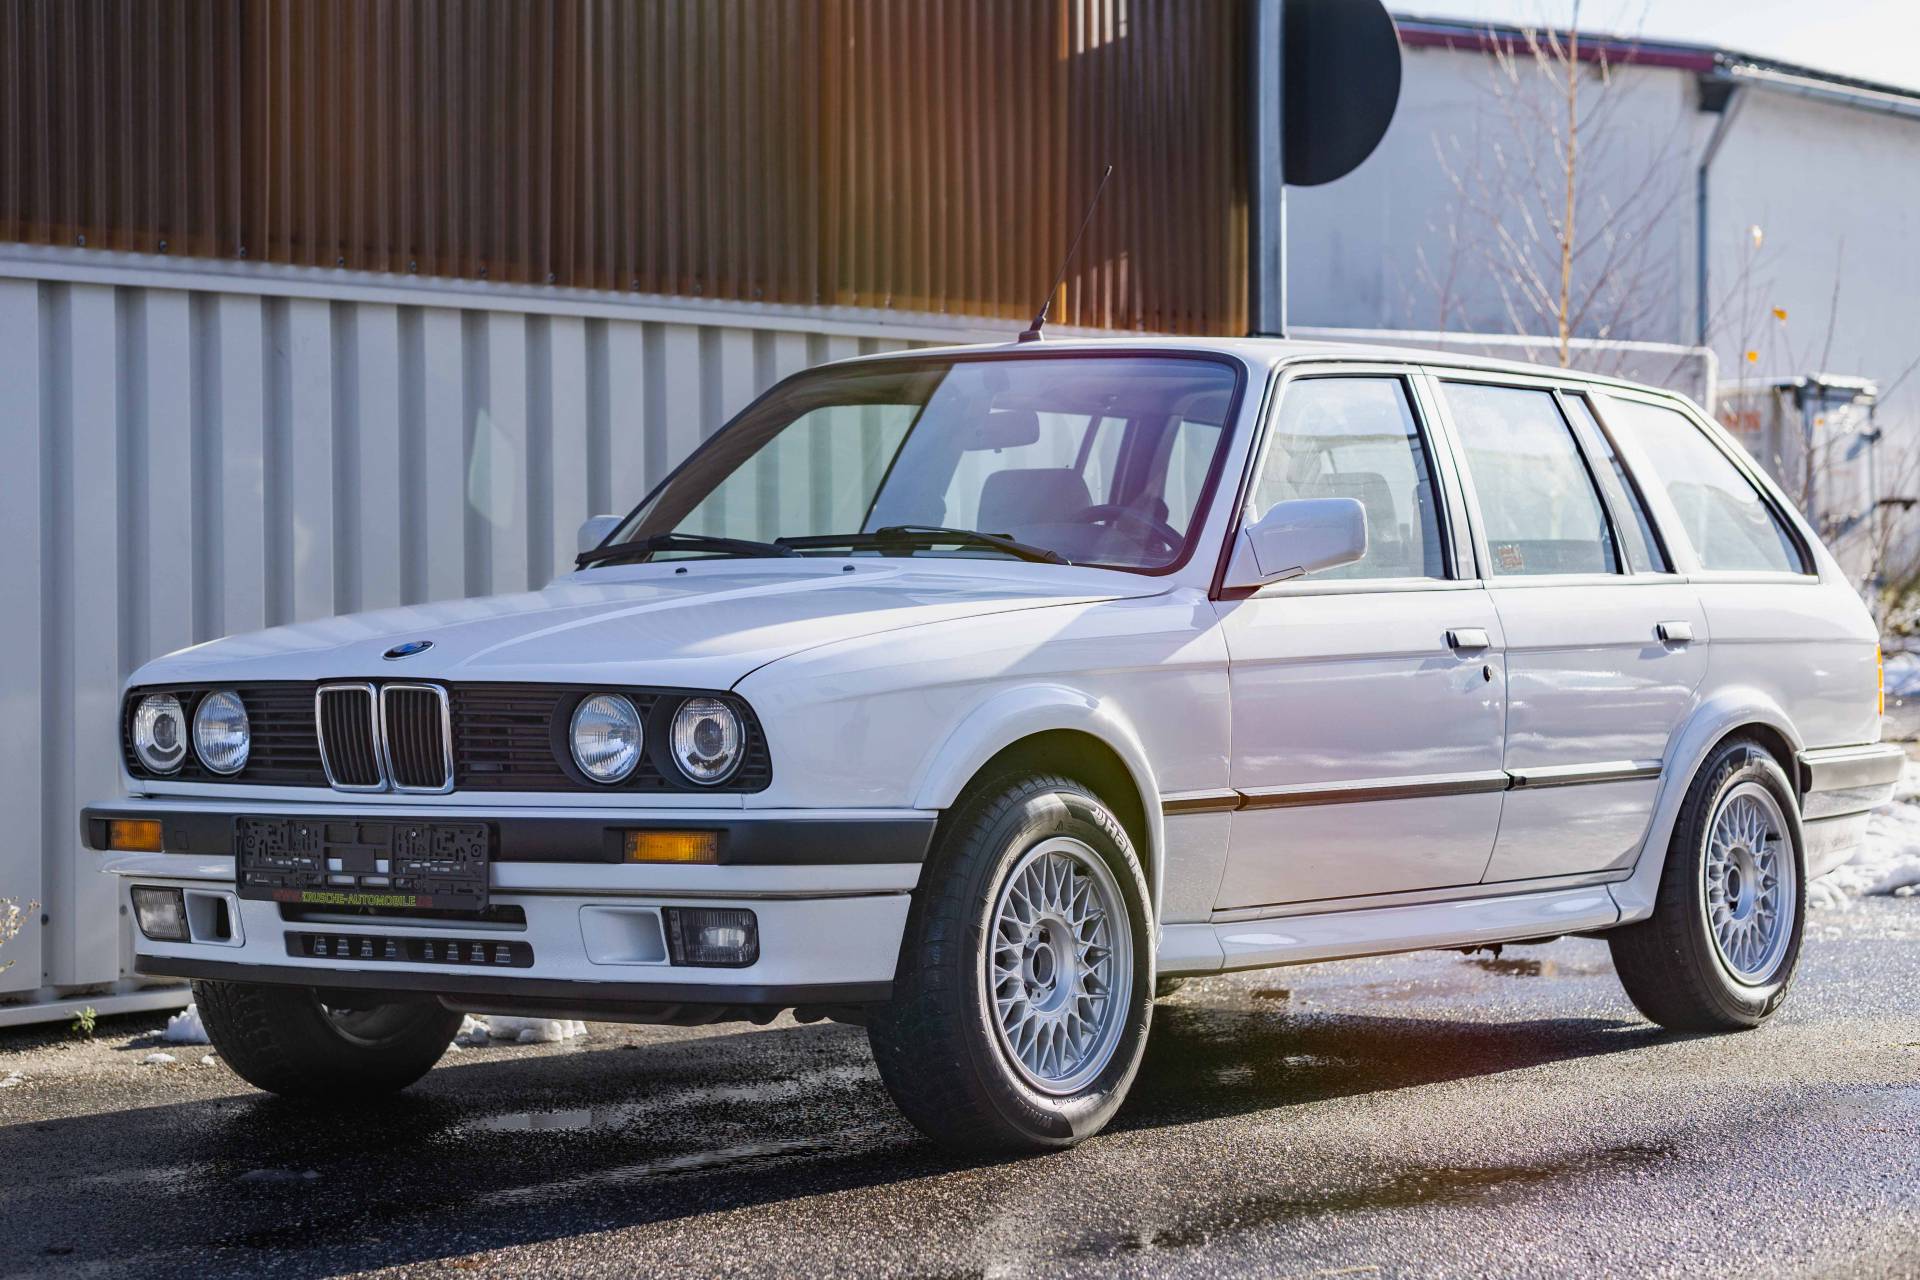 BMW Touring (1988) voor 15.500 kopen